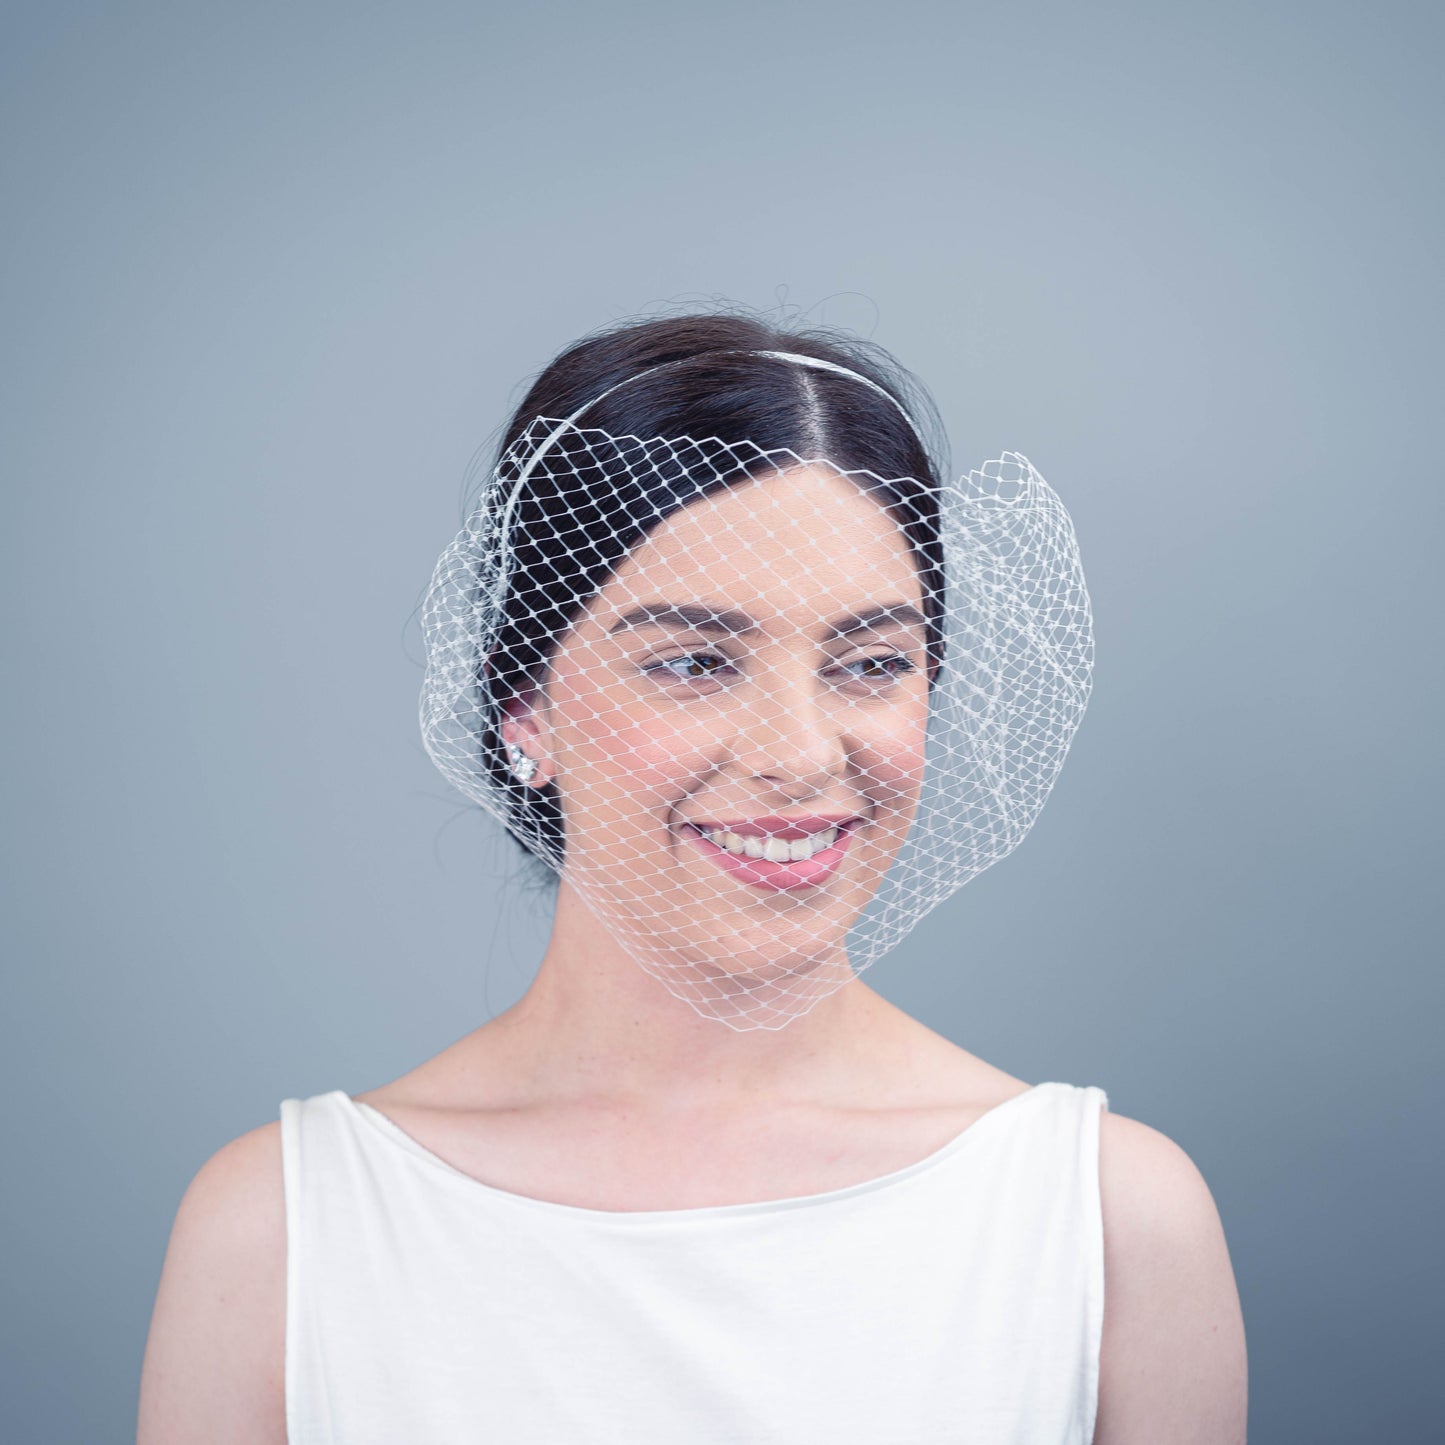 Valerie veil headpiece in white